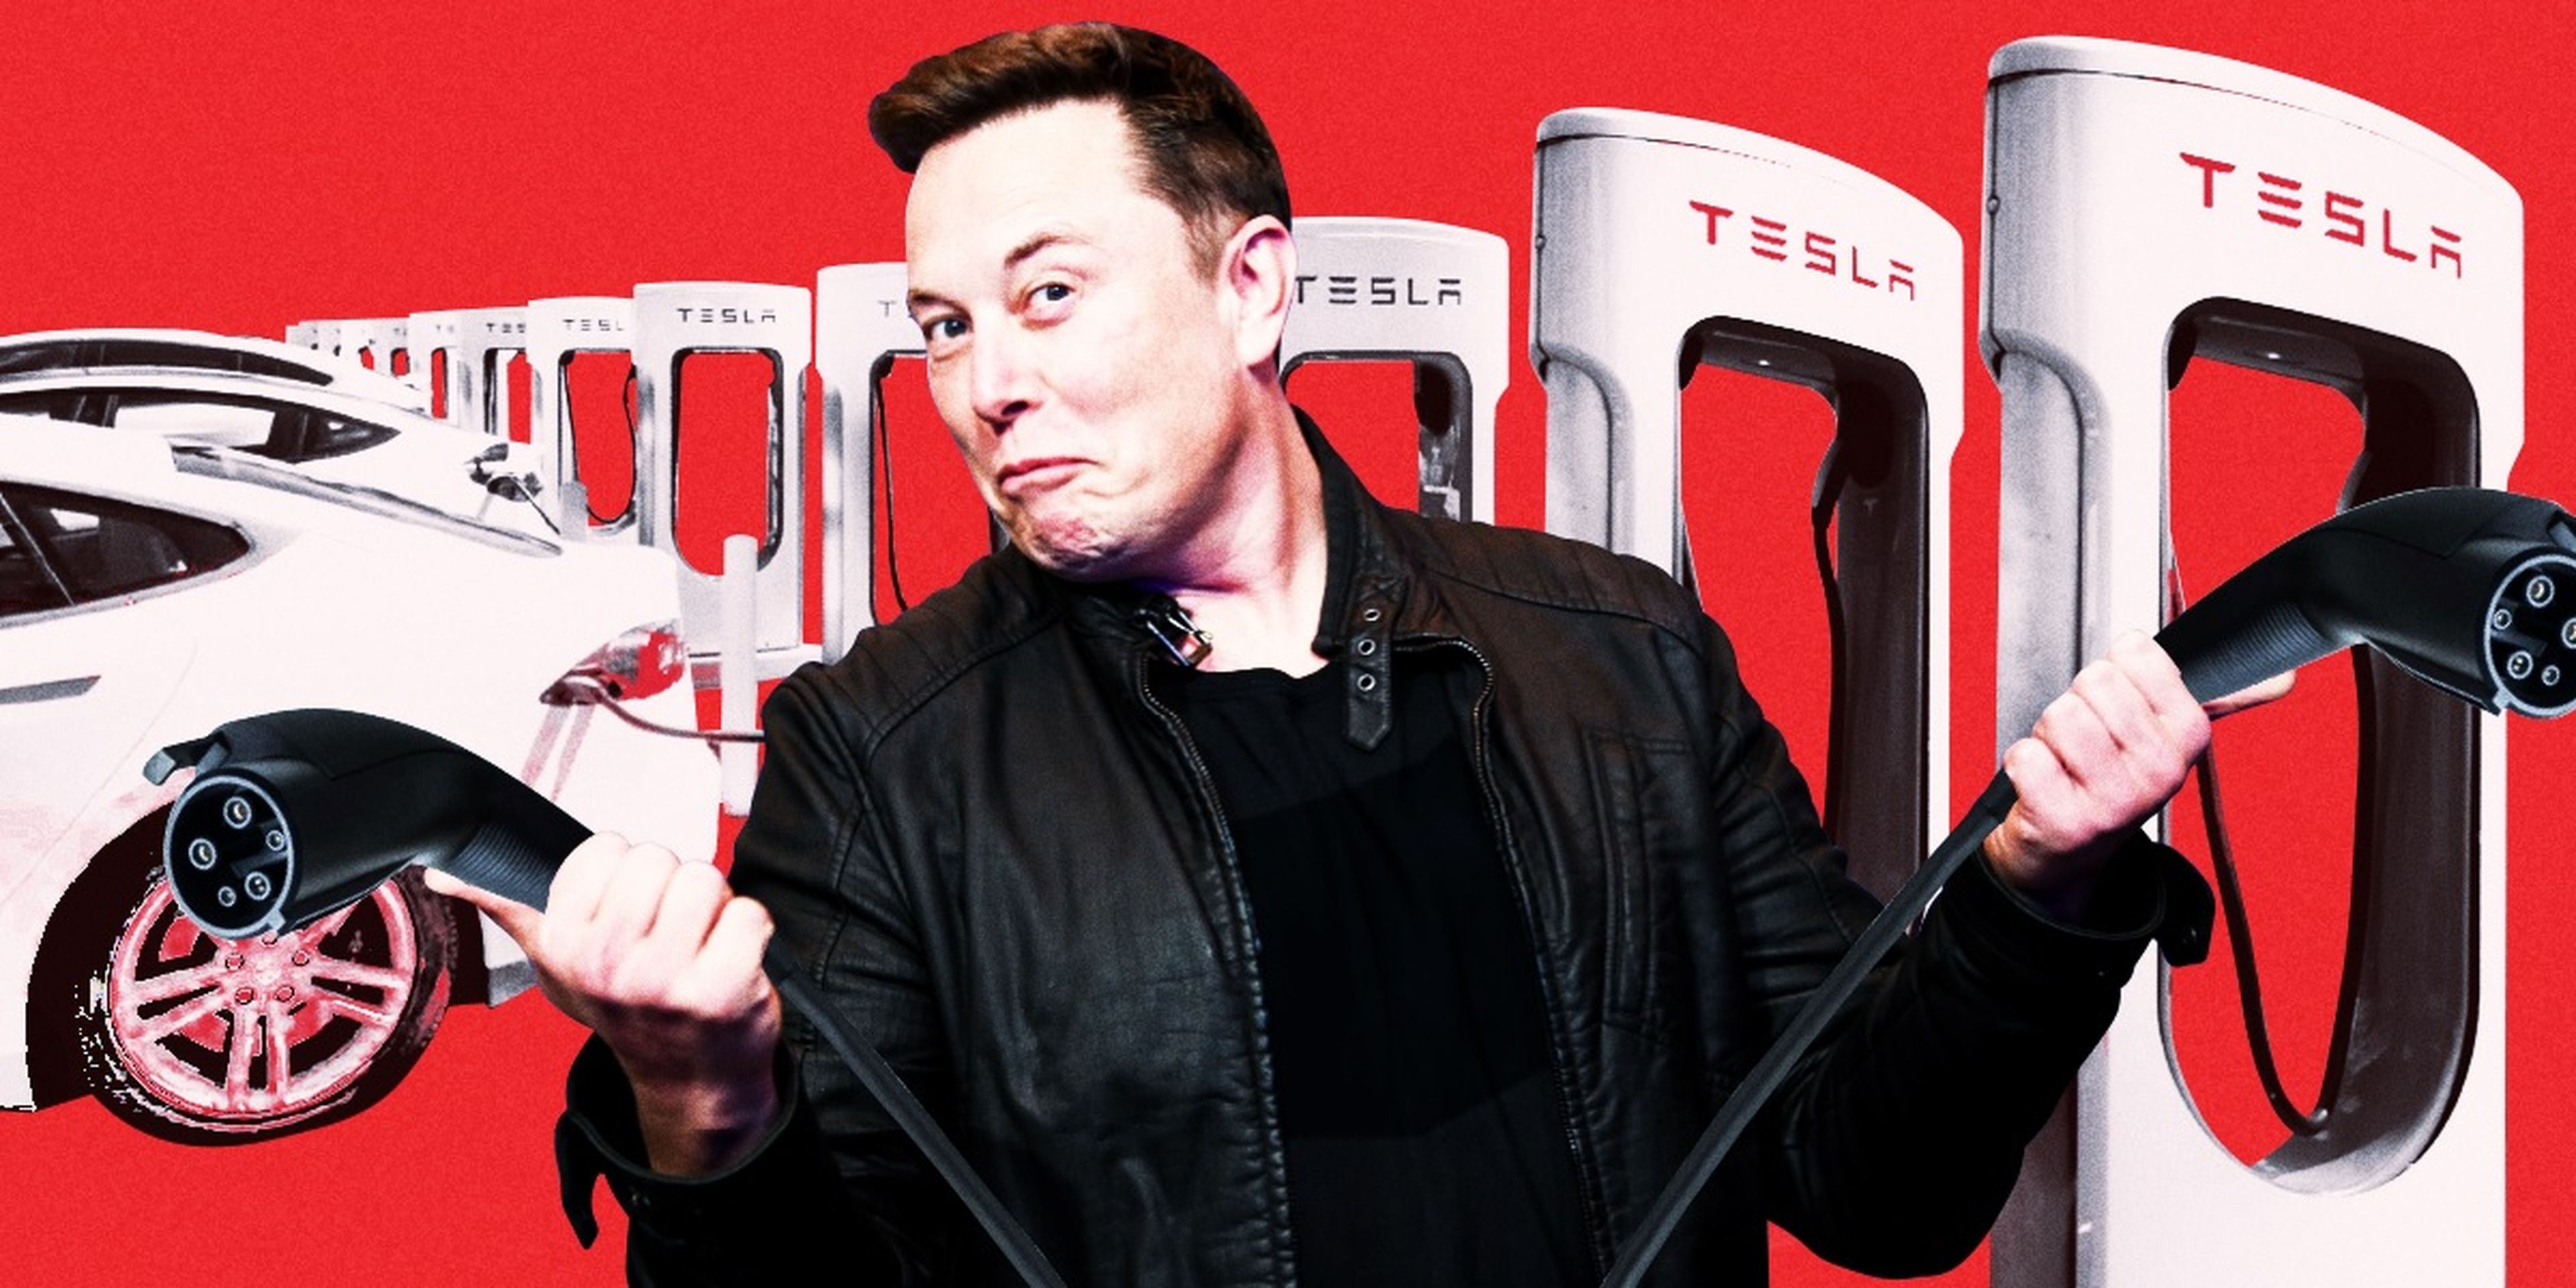 Tesla permite a las empresas rivales utilizar sus estaciones de recarga de vehículos eléctricos, lo que le permite recoger discretamente datos de sus competidores.